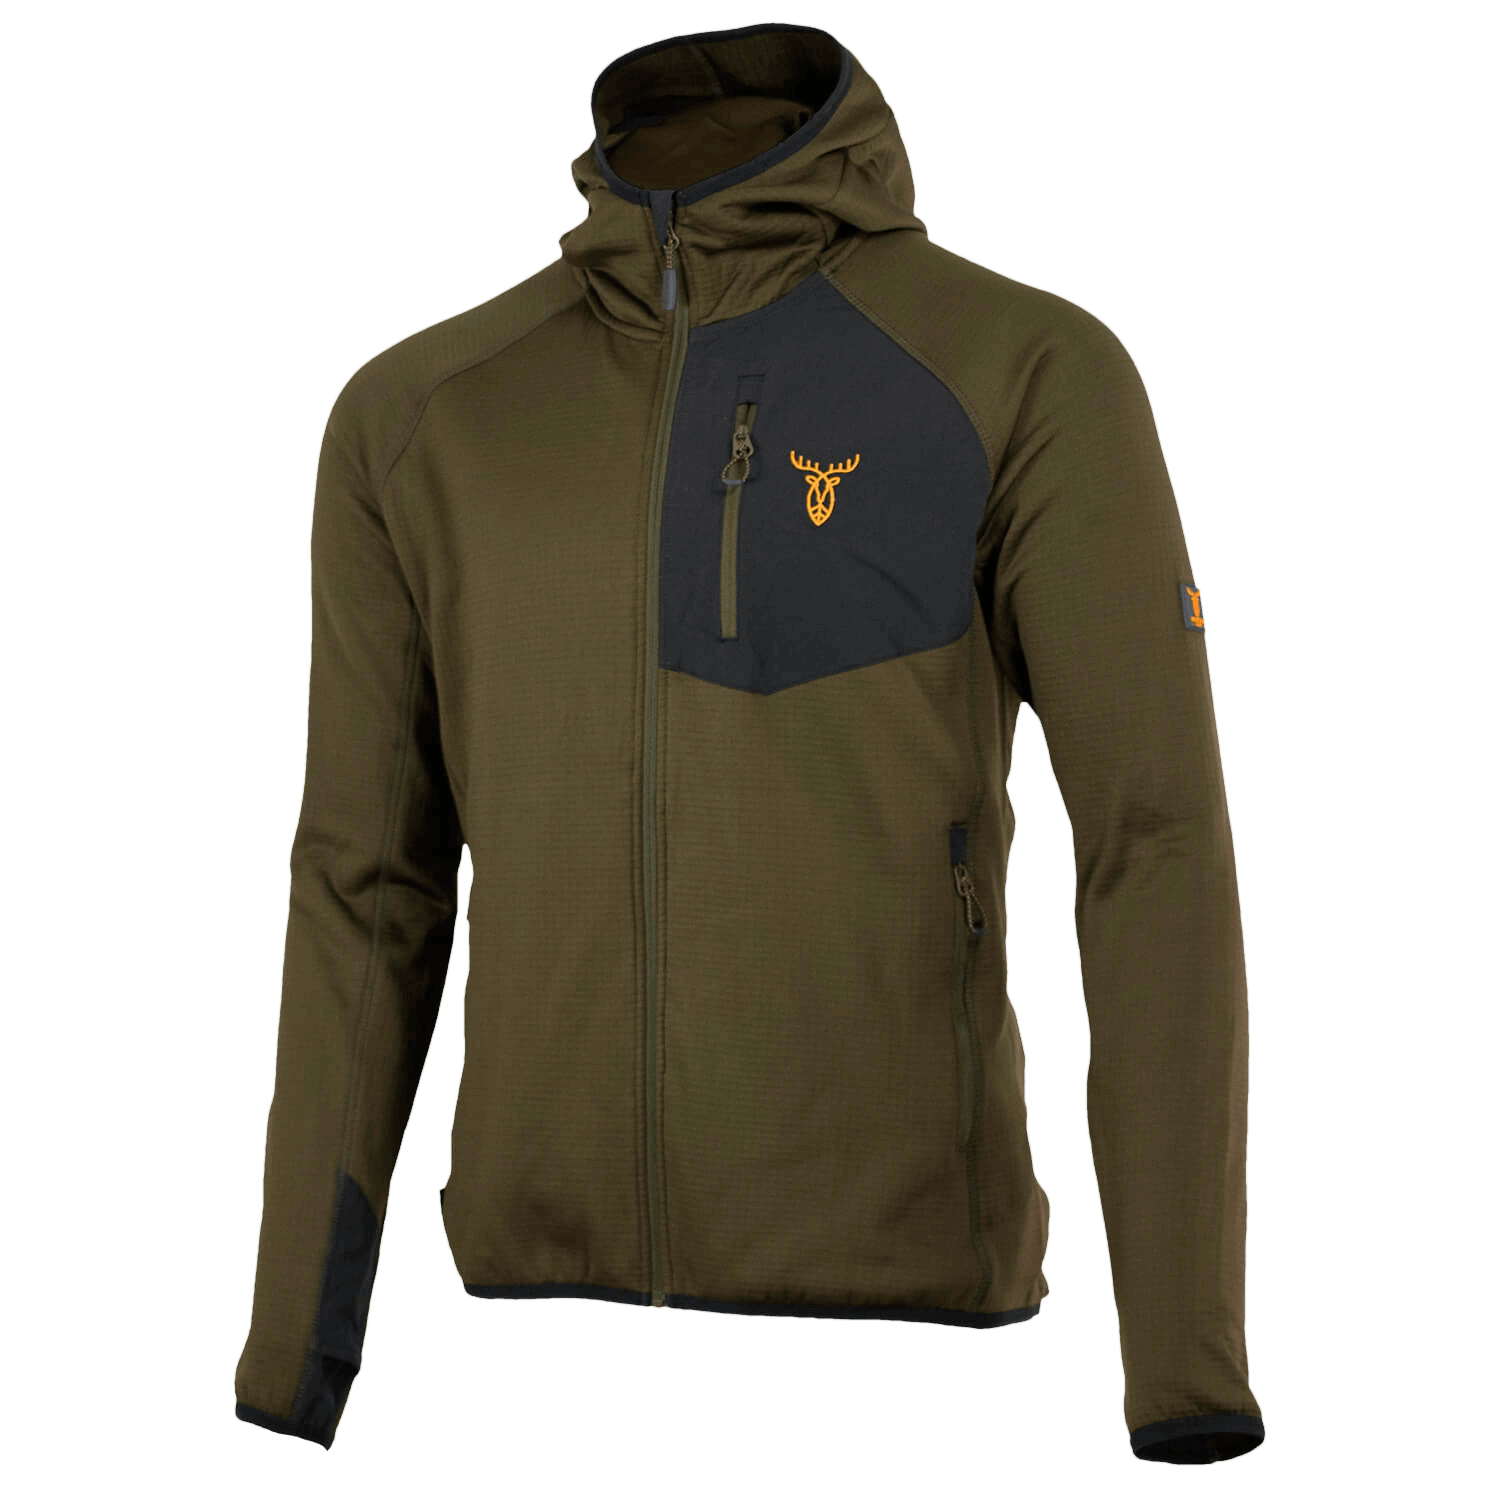  Pirscher Gear Tech fleece hoodie